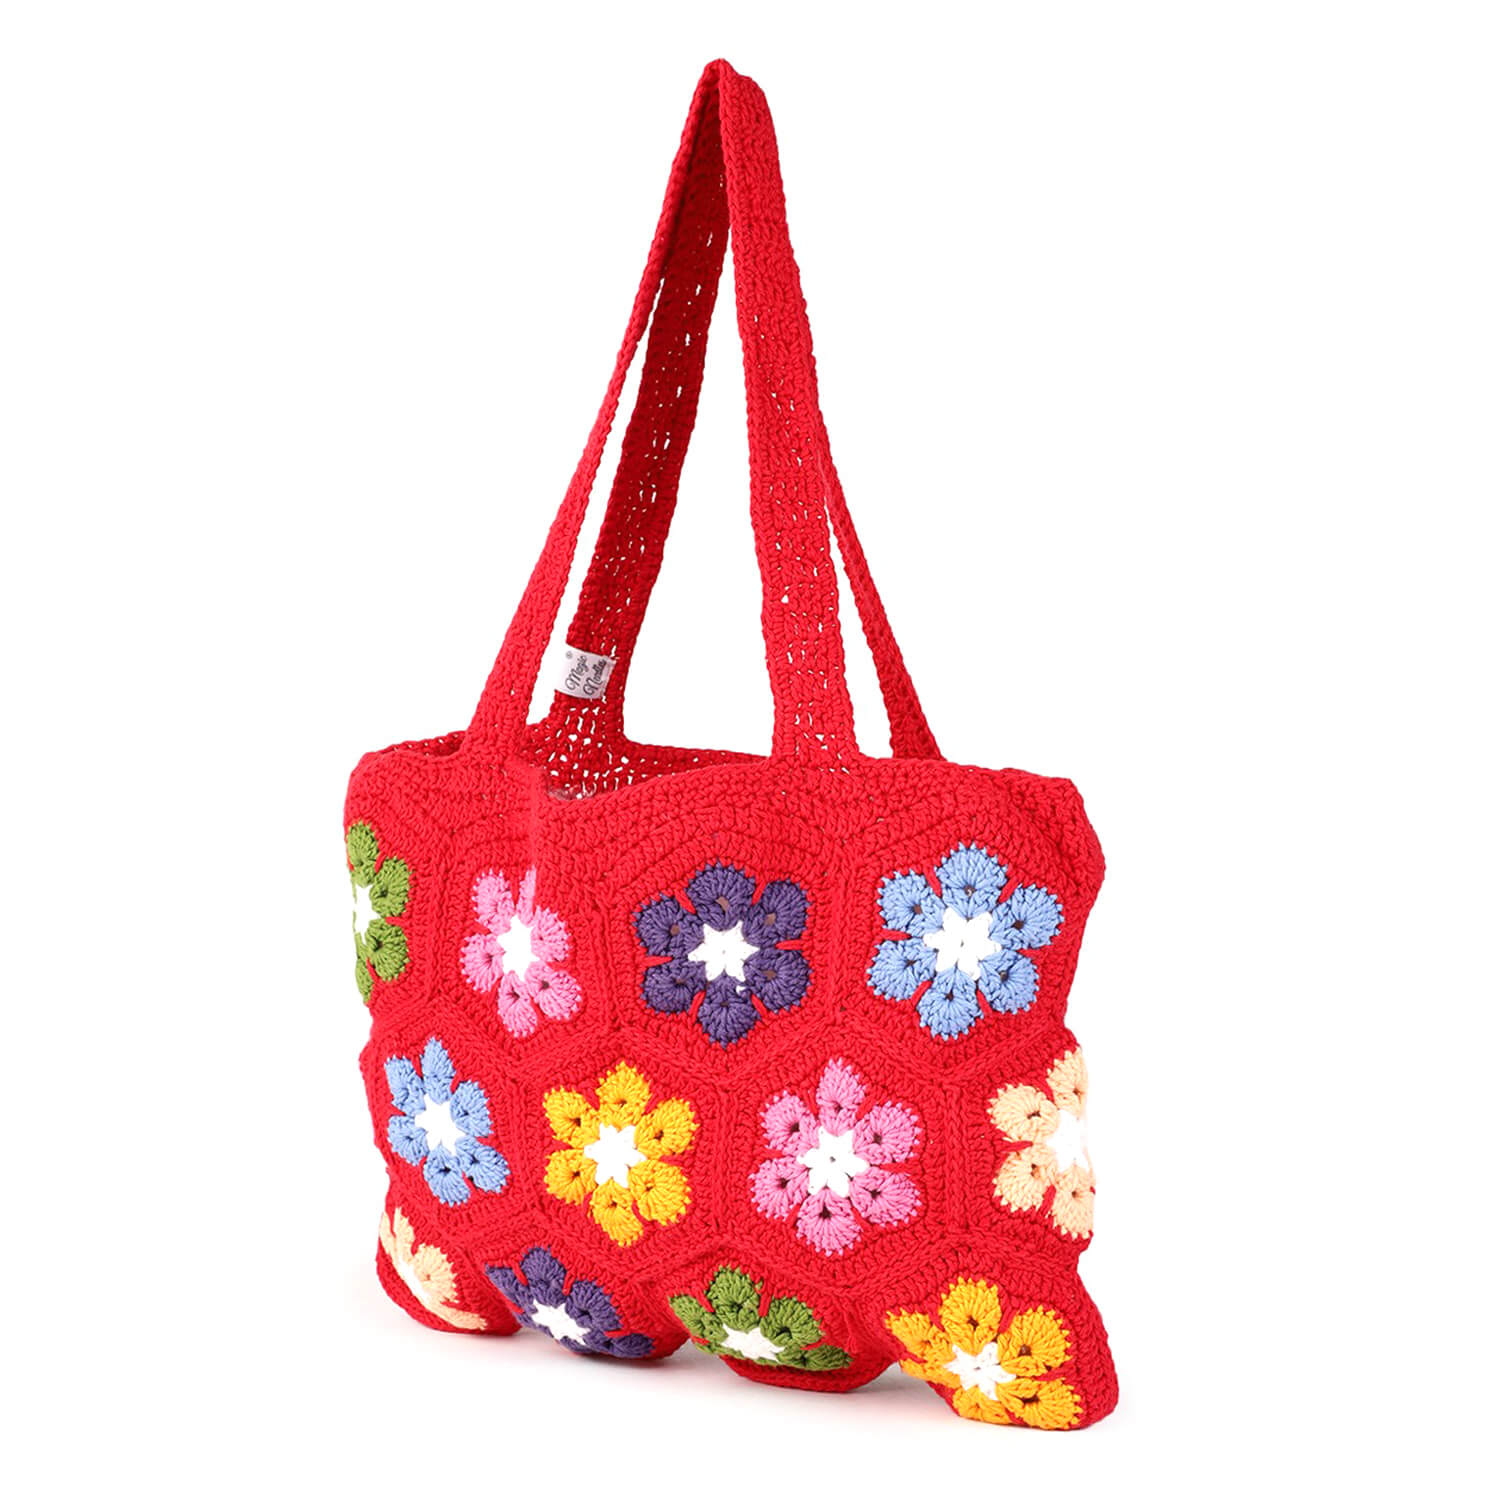 Handmade Crochet Granny Square Bag - Red 2787